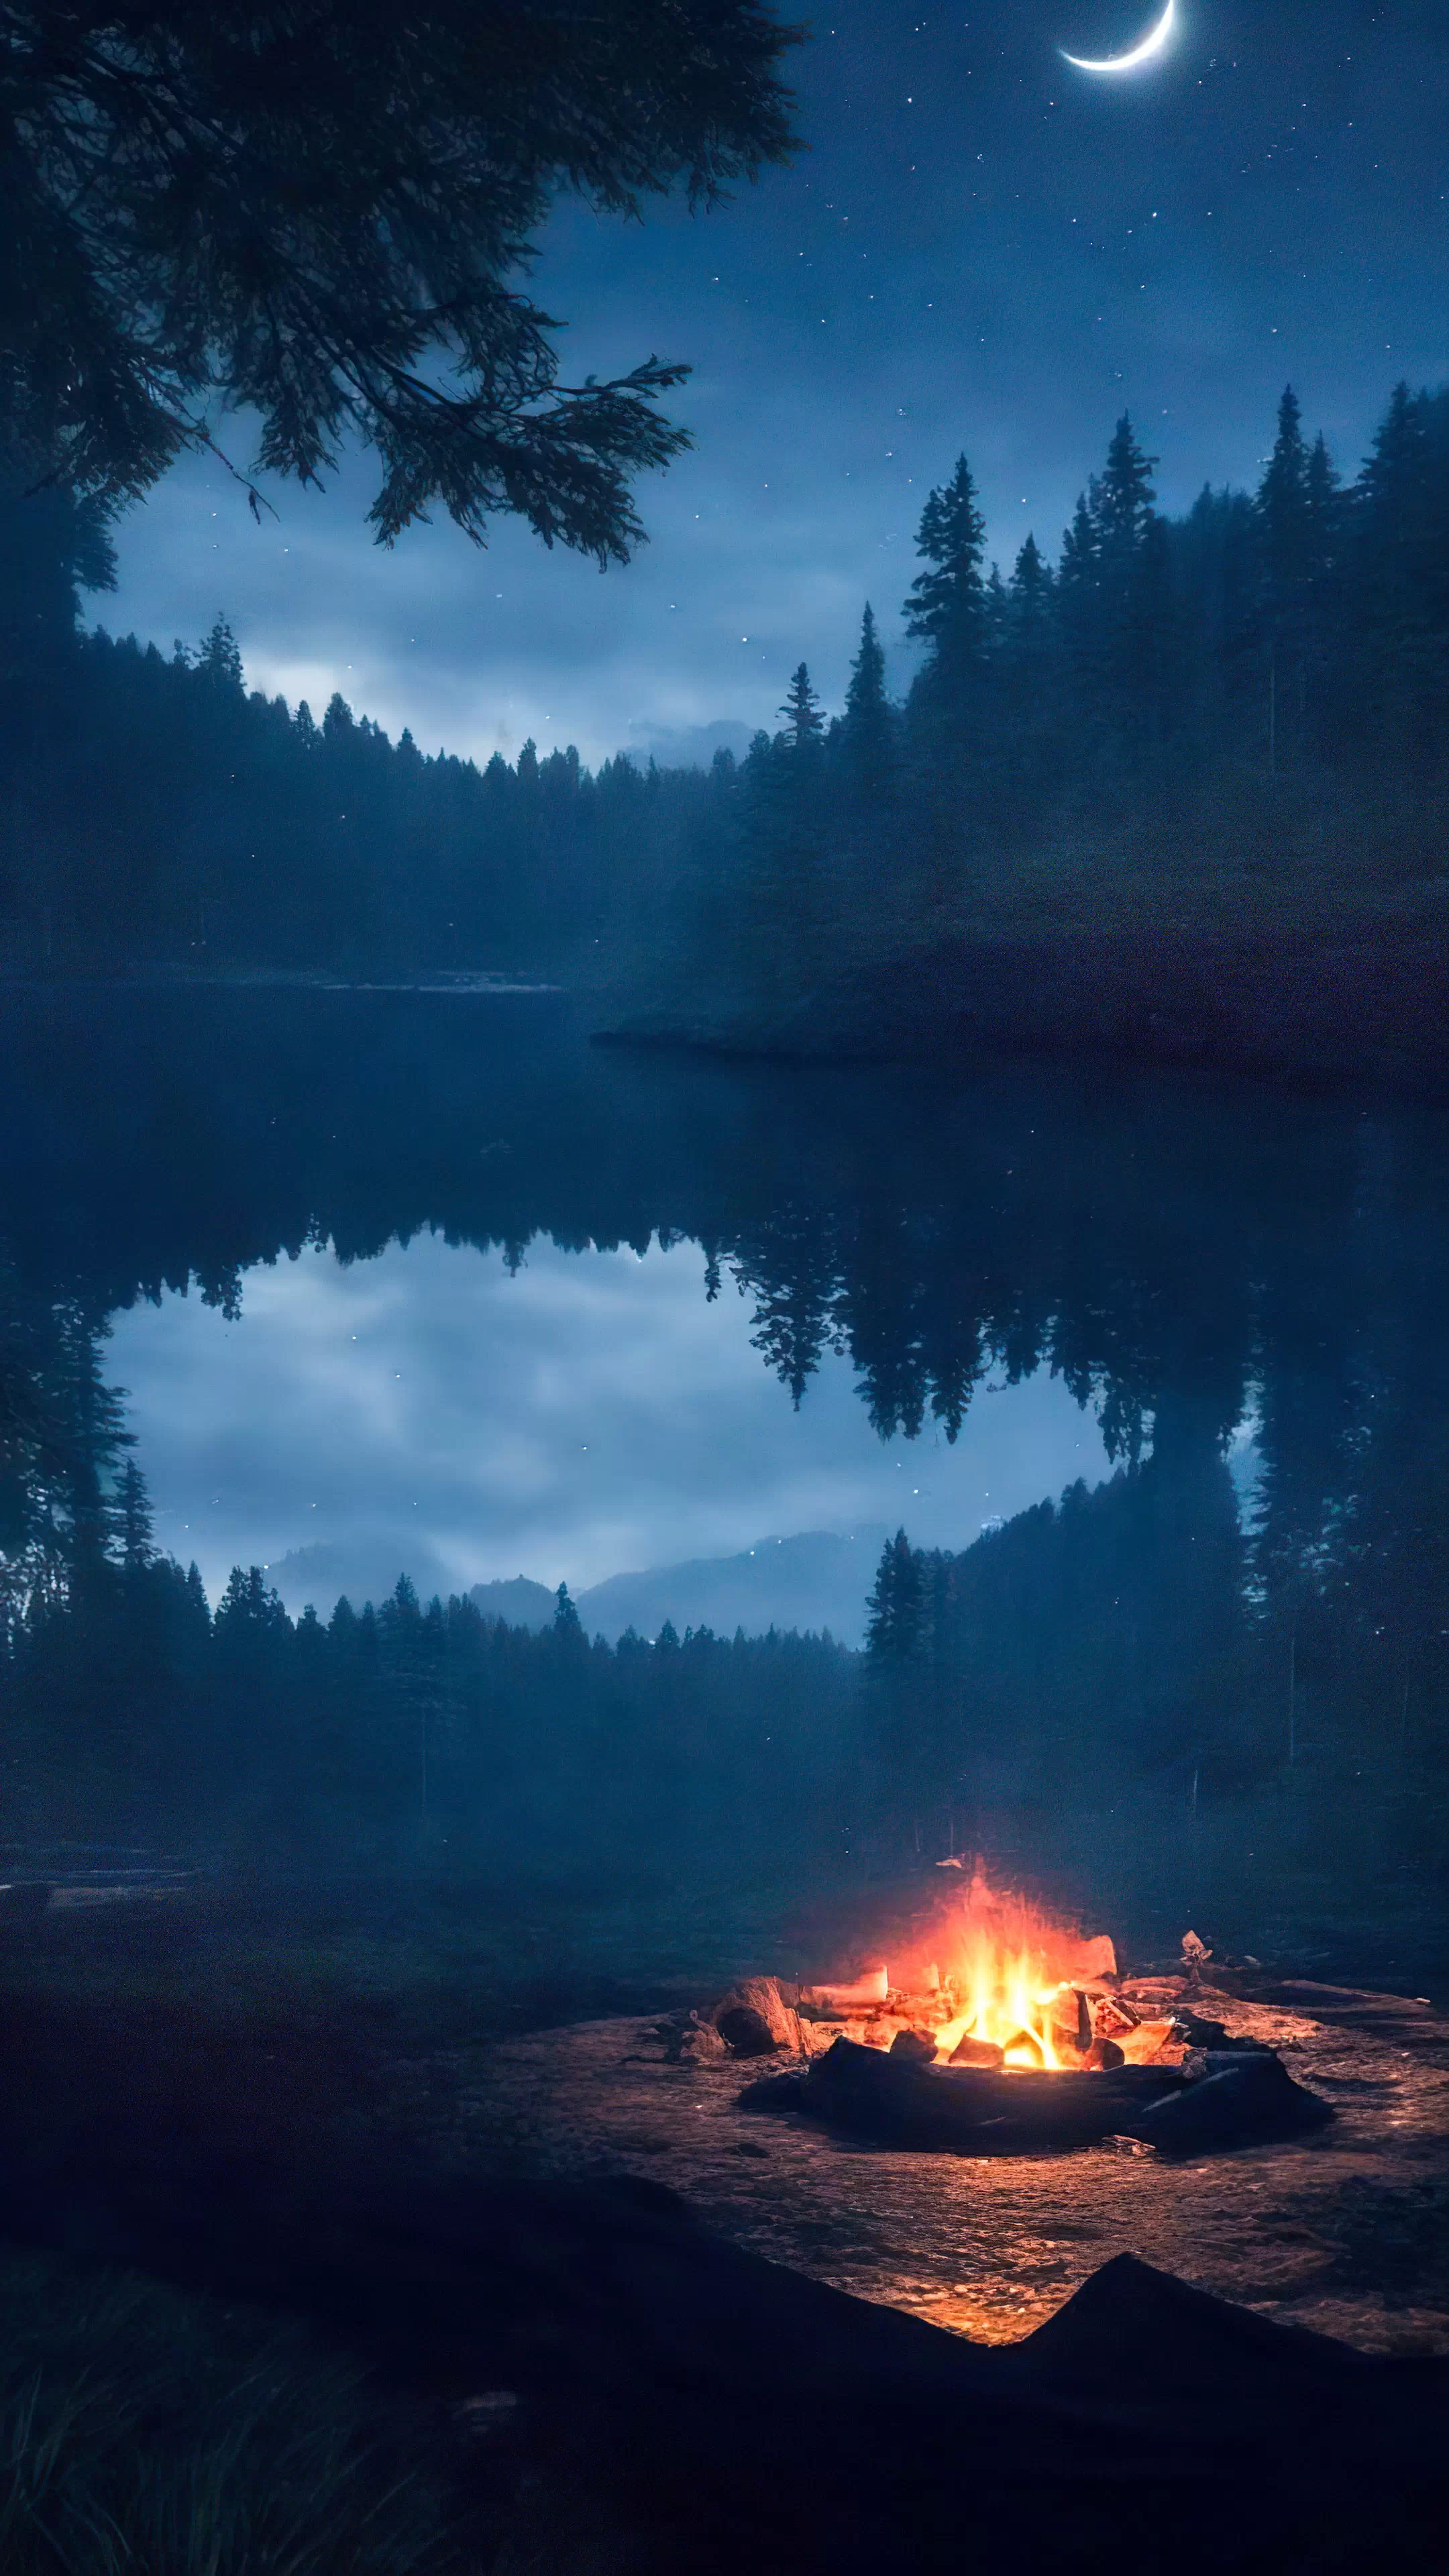 Plongez dans l'aventure avec notre fond d'écran nature HD, illustrant un campement avec un feu de camp chaleureux au cœur d'une nature sauvage sombre, et laissez votre écran vous transporter à une nuit sous les étoiles.